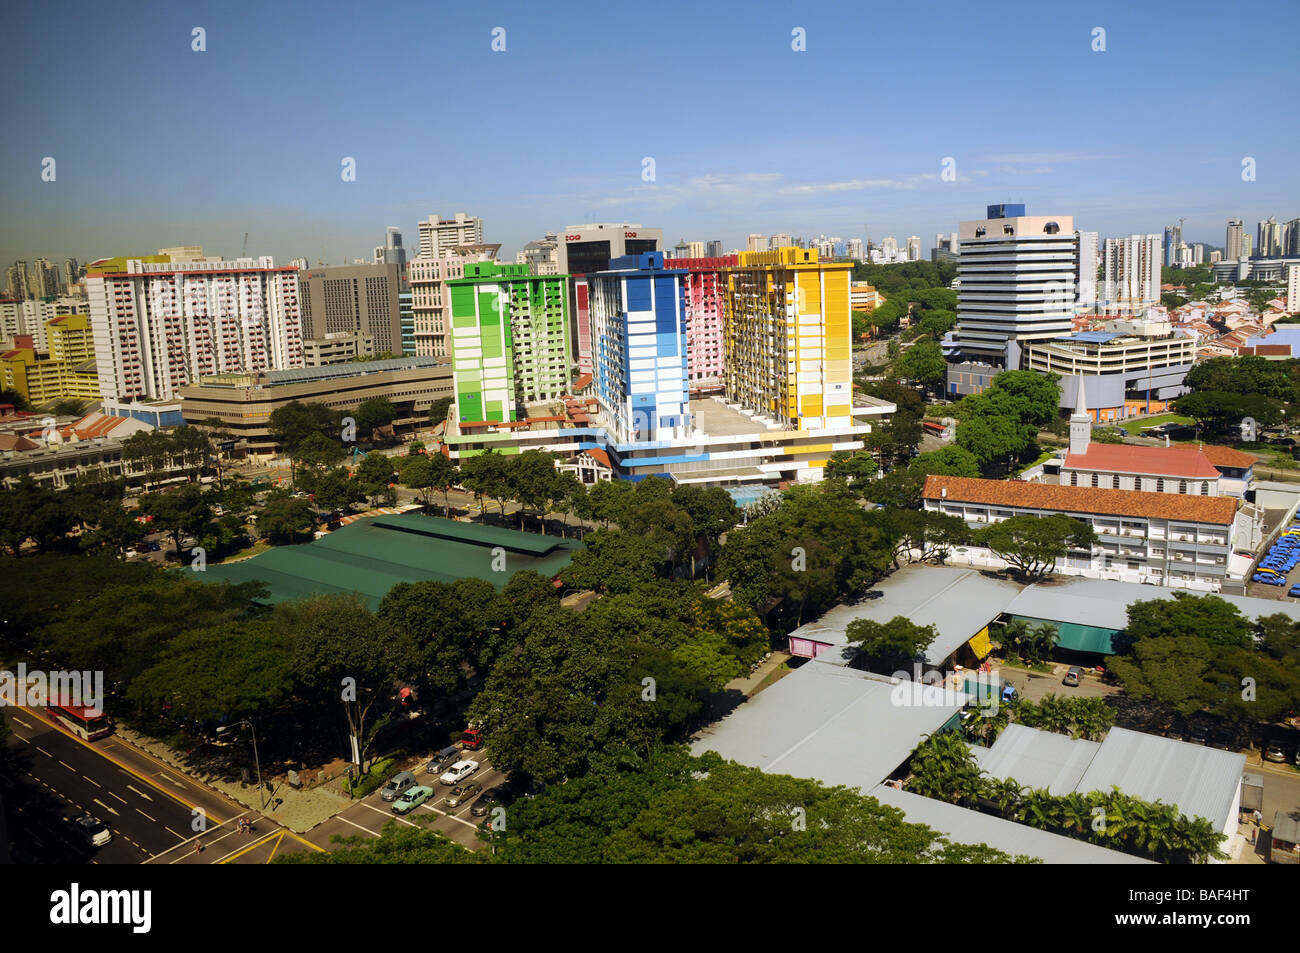 Singapur, un colorido edificio de pisos. Sólo puede crecer hacia arriba ahora, de ahí tantos bloques de torre,y la gente vive en apartamentos solamente Foto de stock